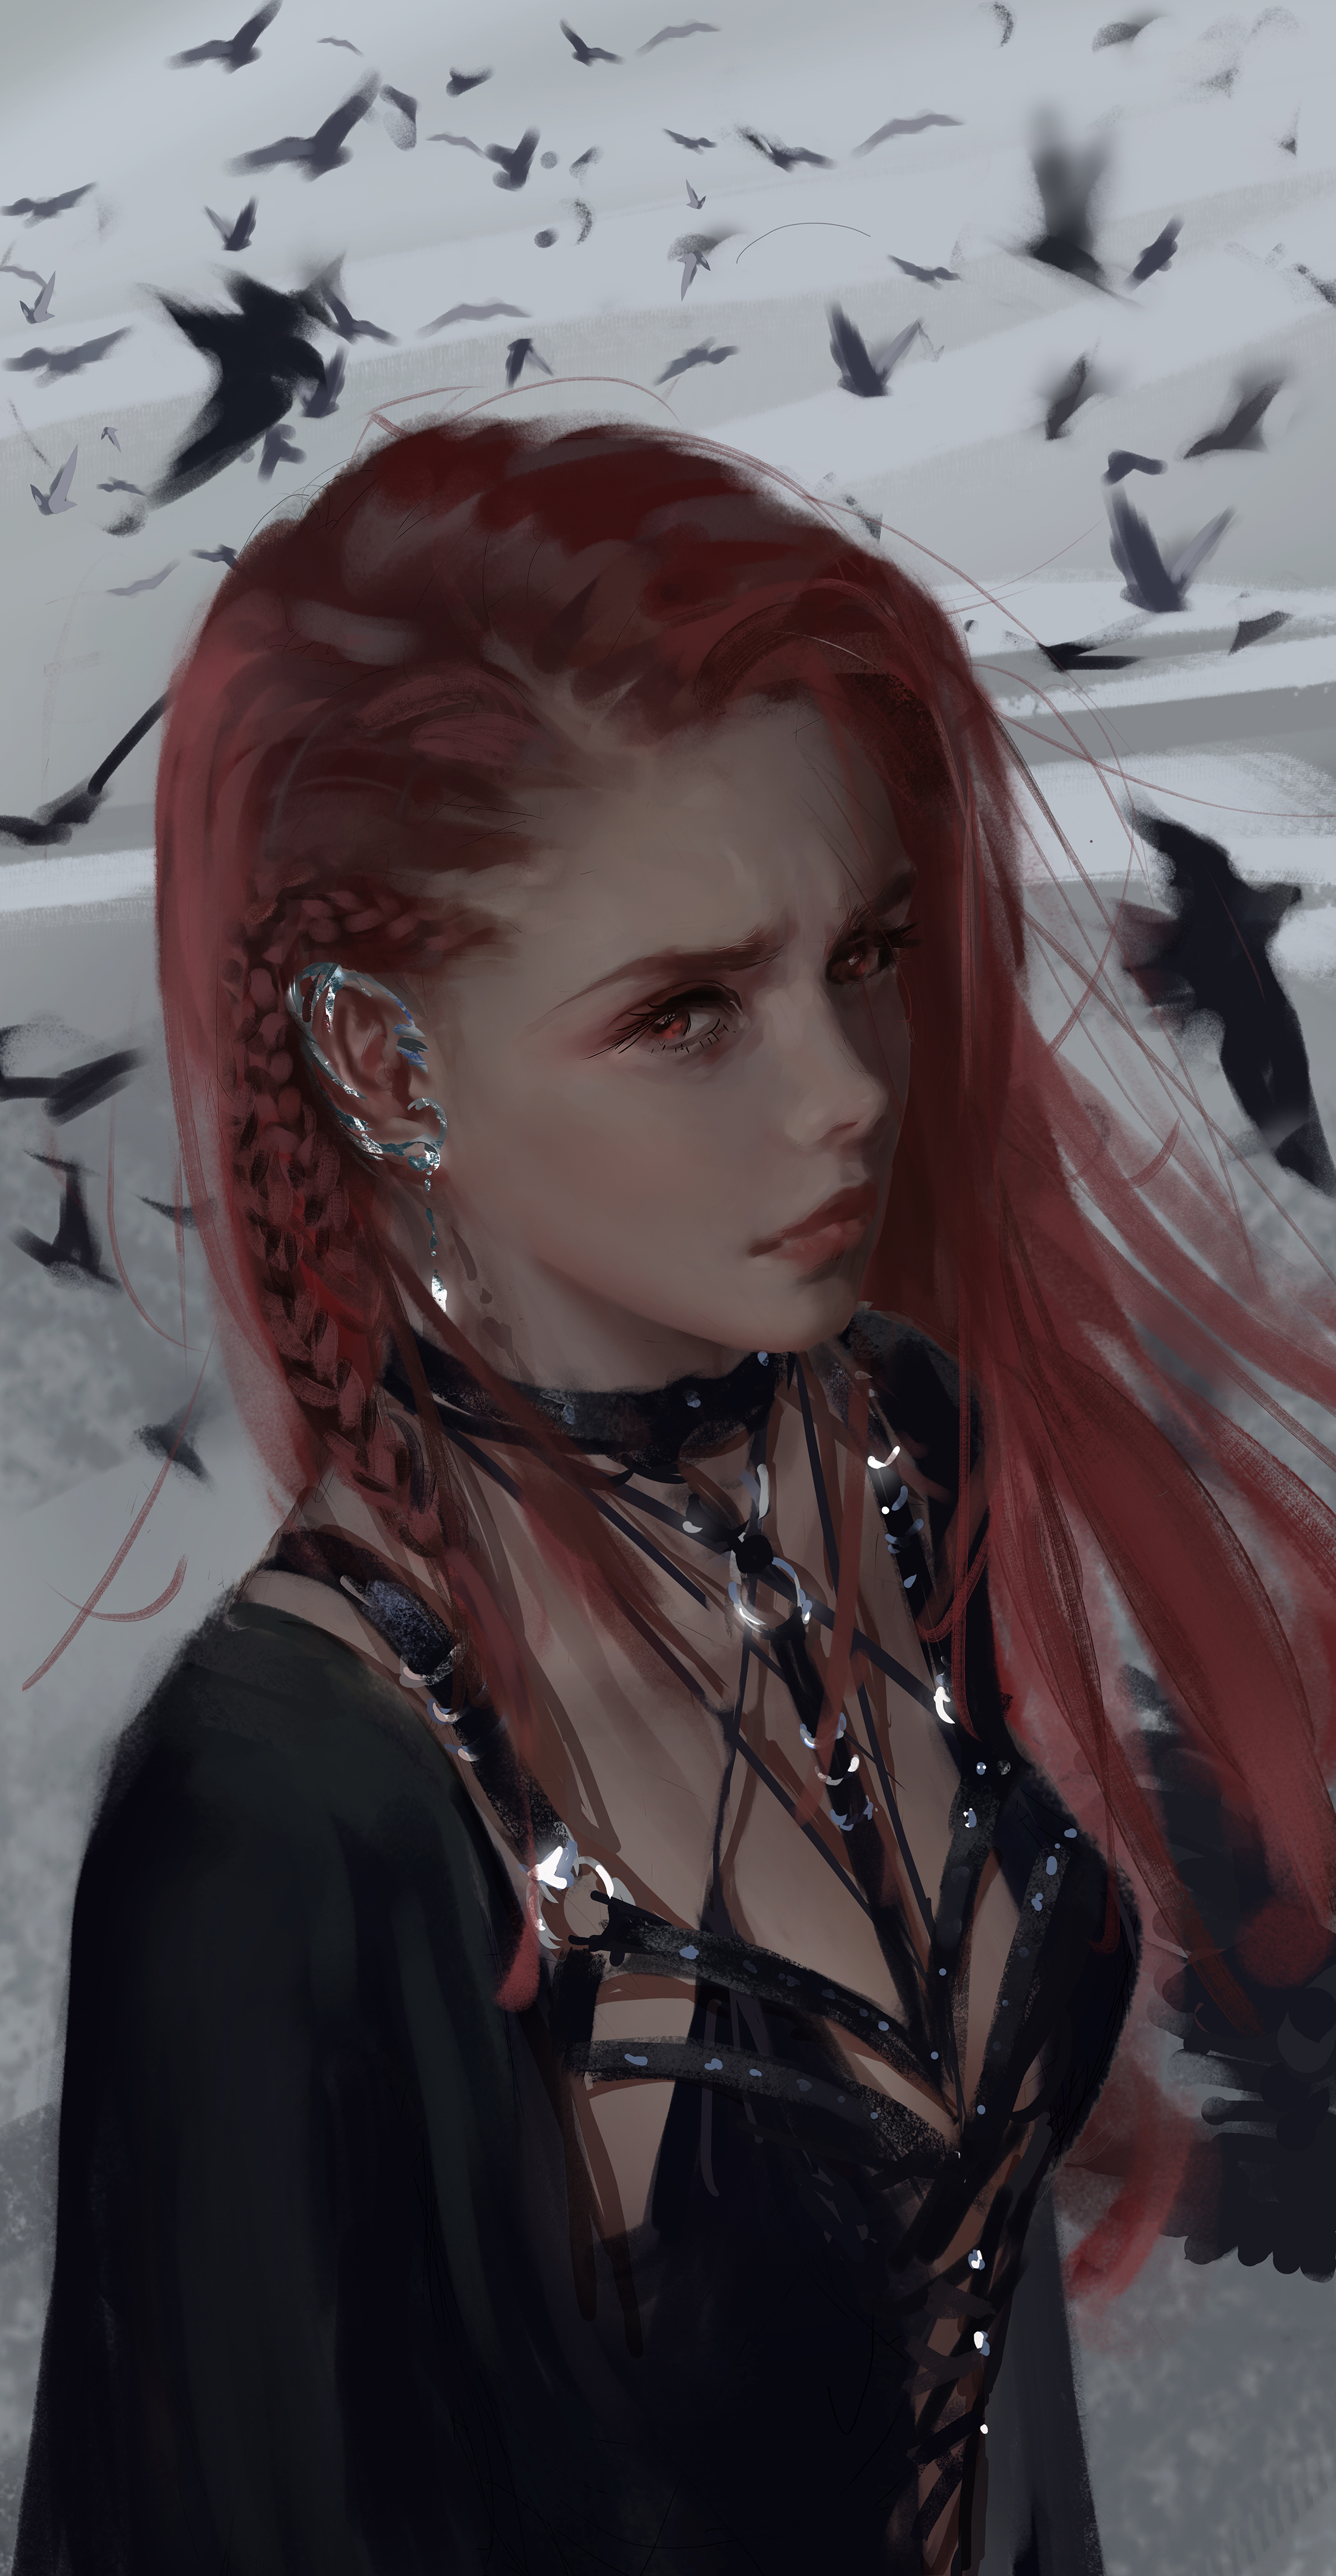 WLOP Digital Art Redhead Crow Fantasy Girl Birds Face Women 2408x4644